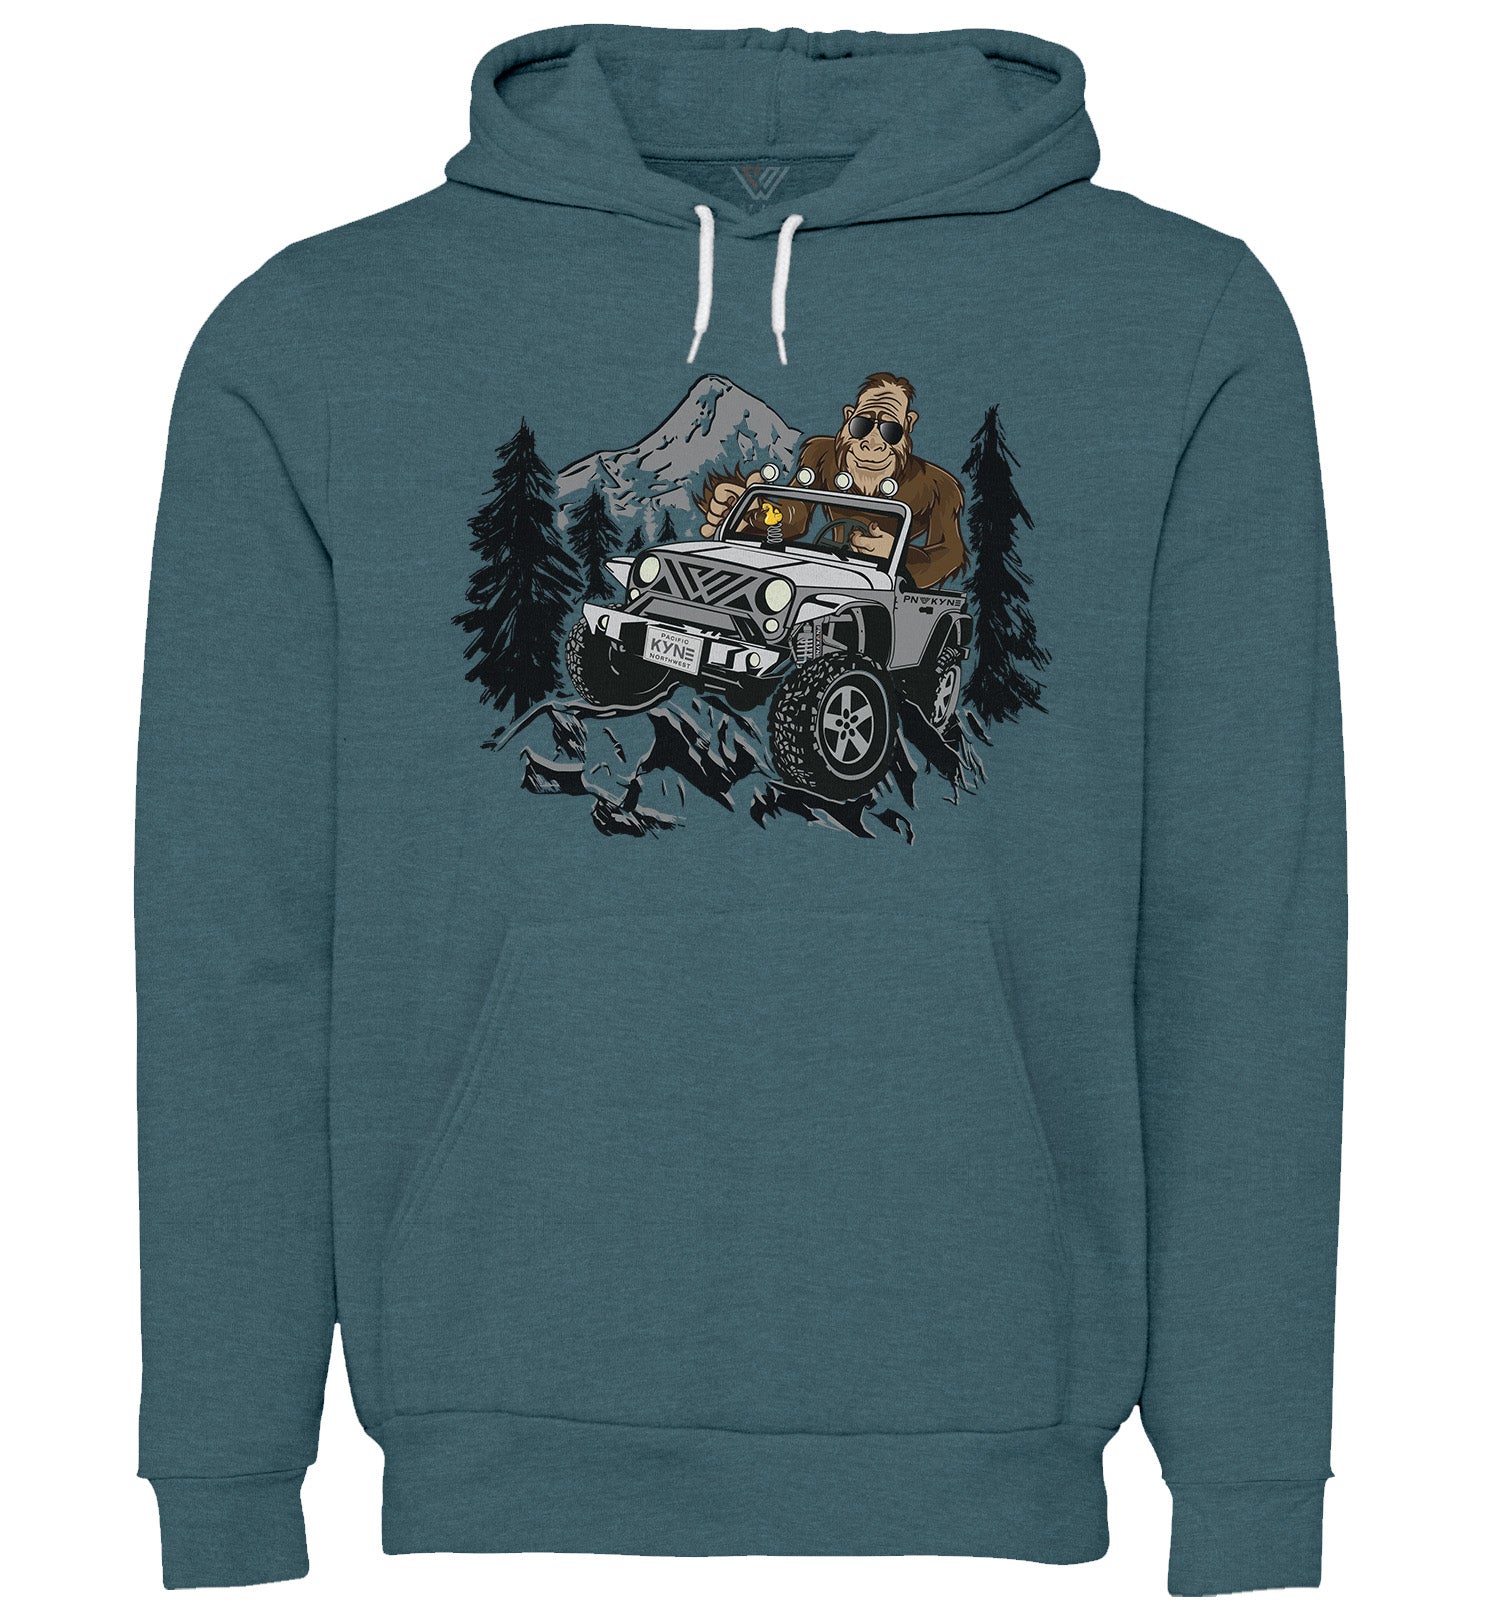 Bigfoot Sweatshirt - Jeepin Bigfoot - Pullover Hoodie - Front - Heather Slate